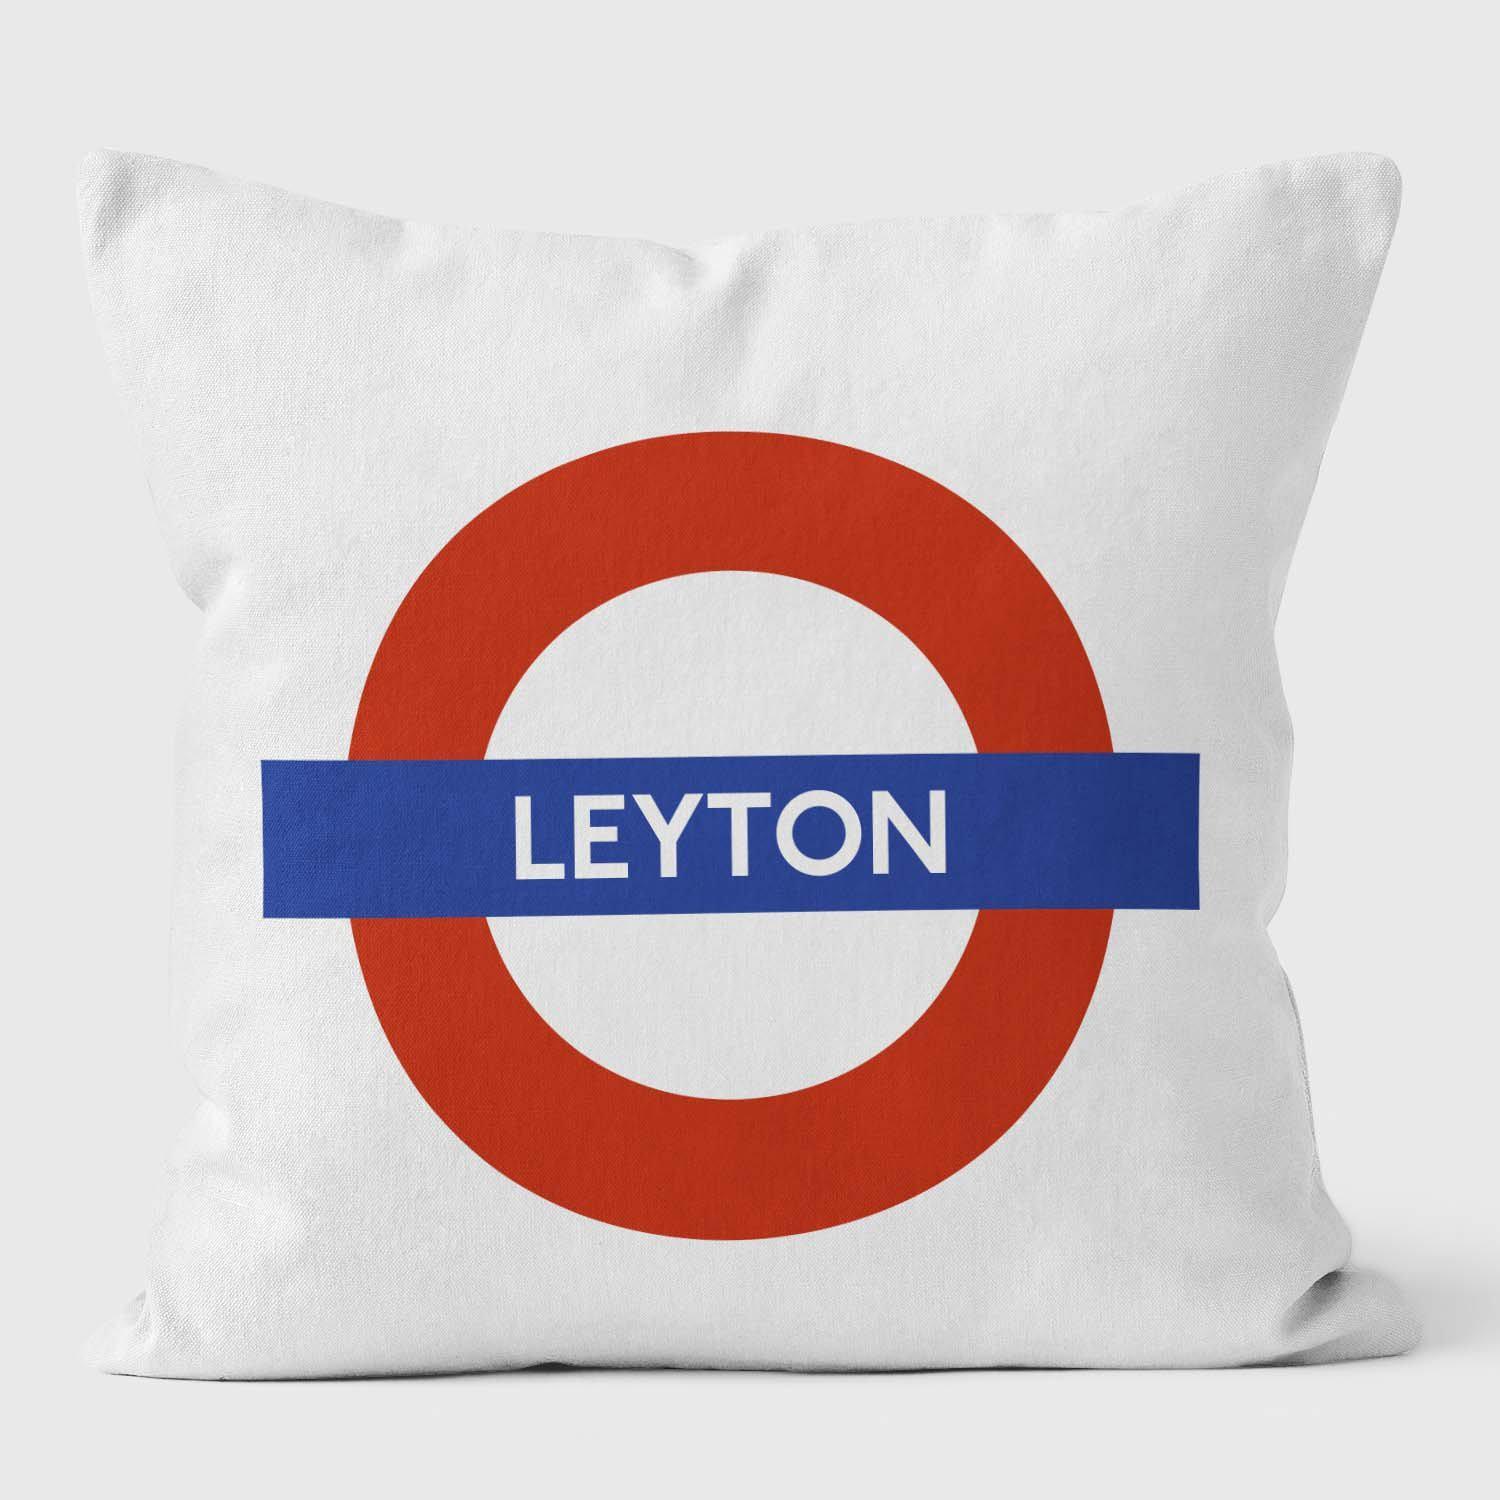 Leyton London Underground Tube Station Roundel Cushion - Handmade Cushions UK - WeLoveCushions